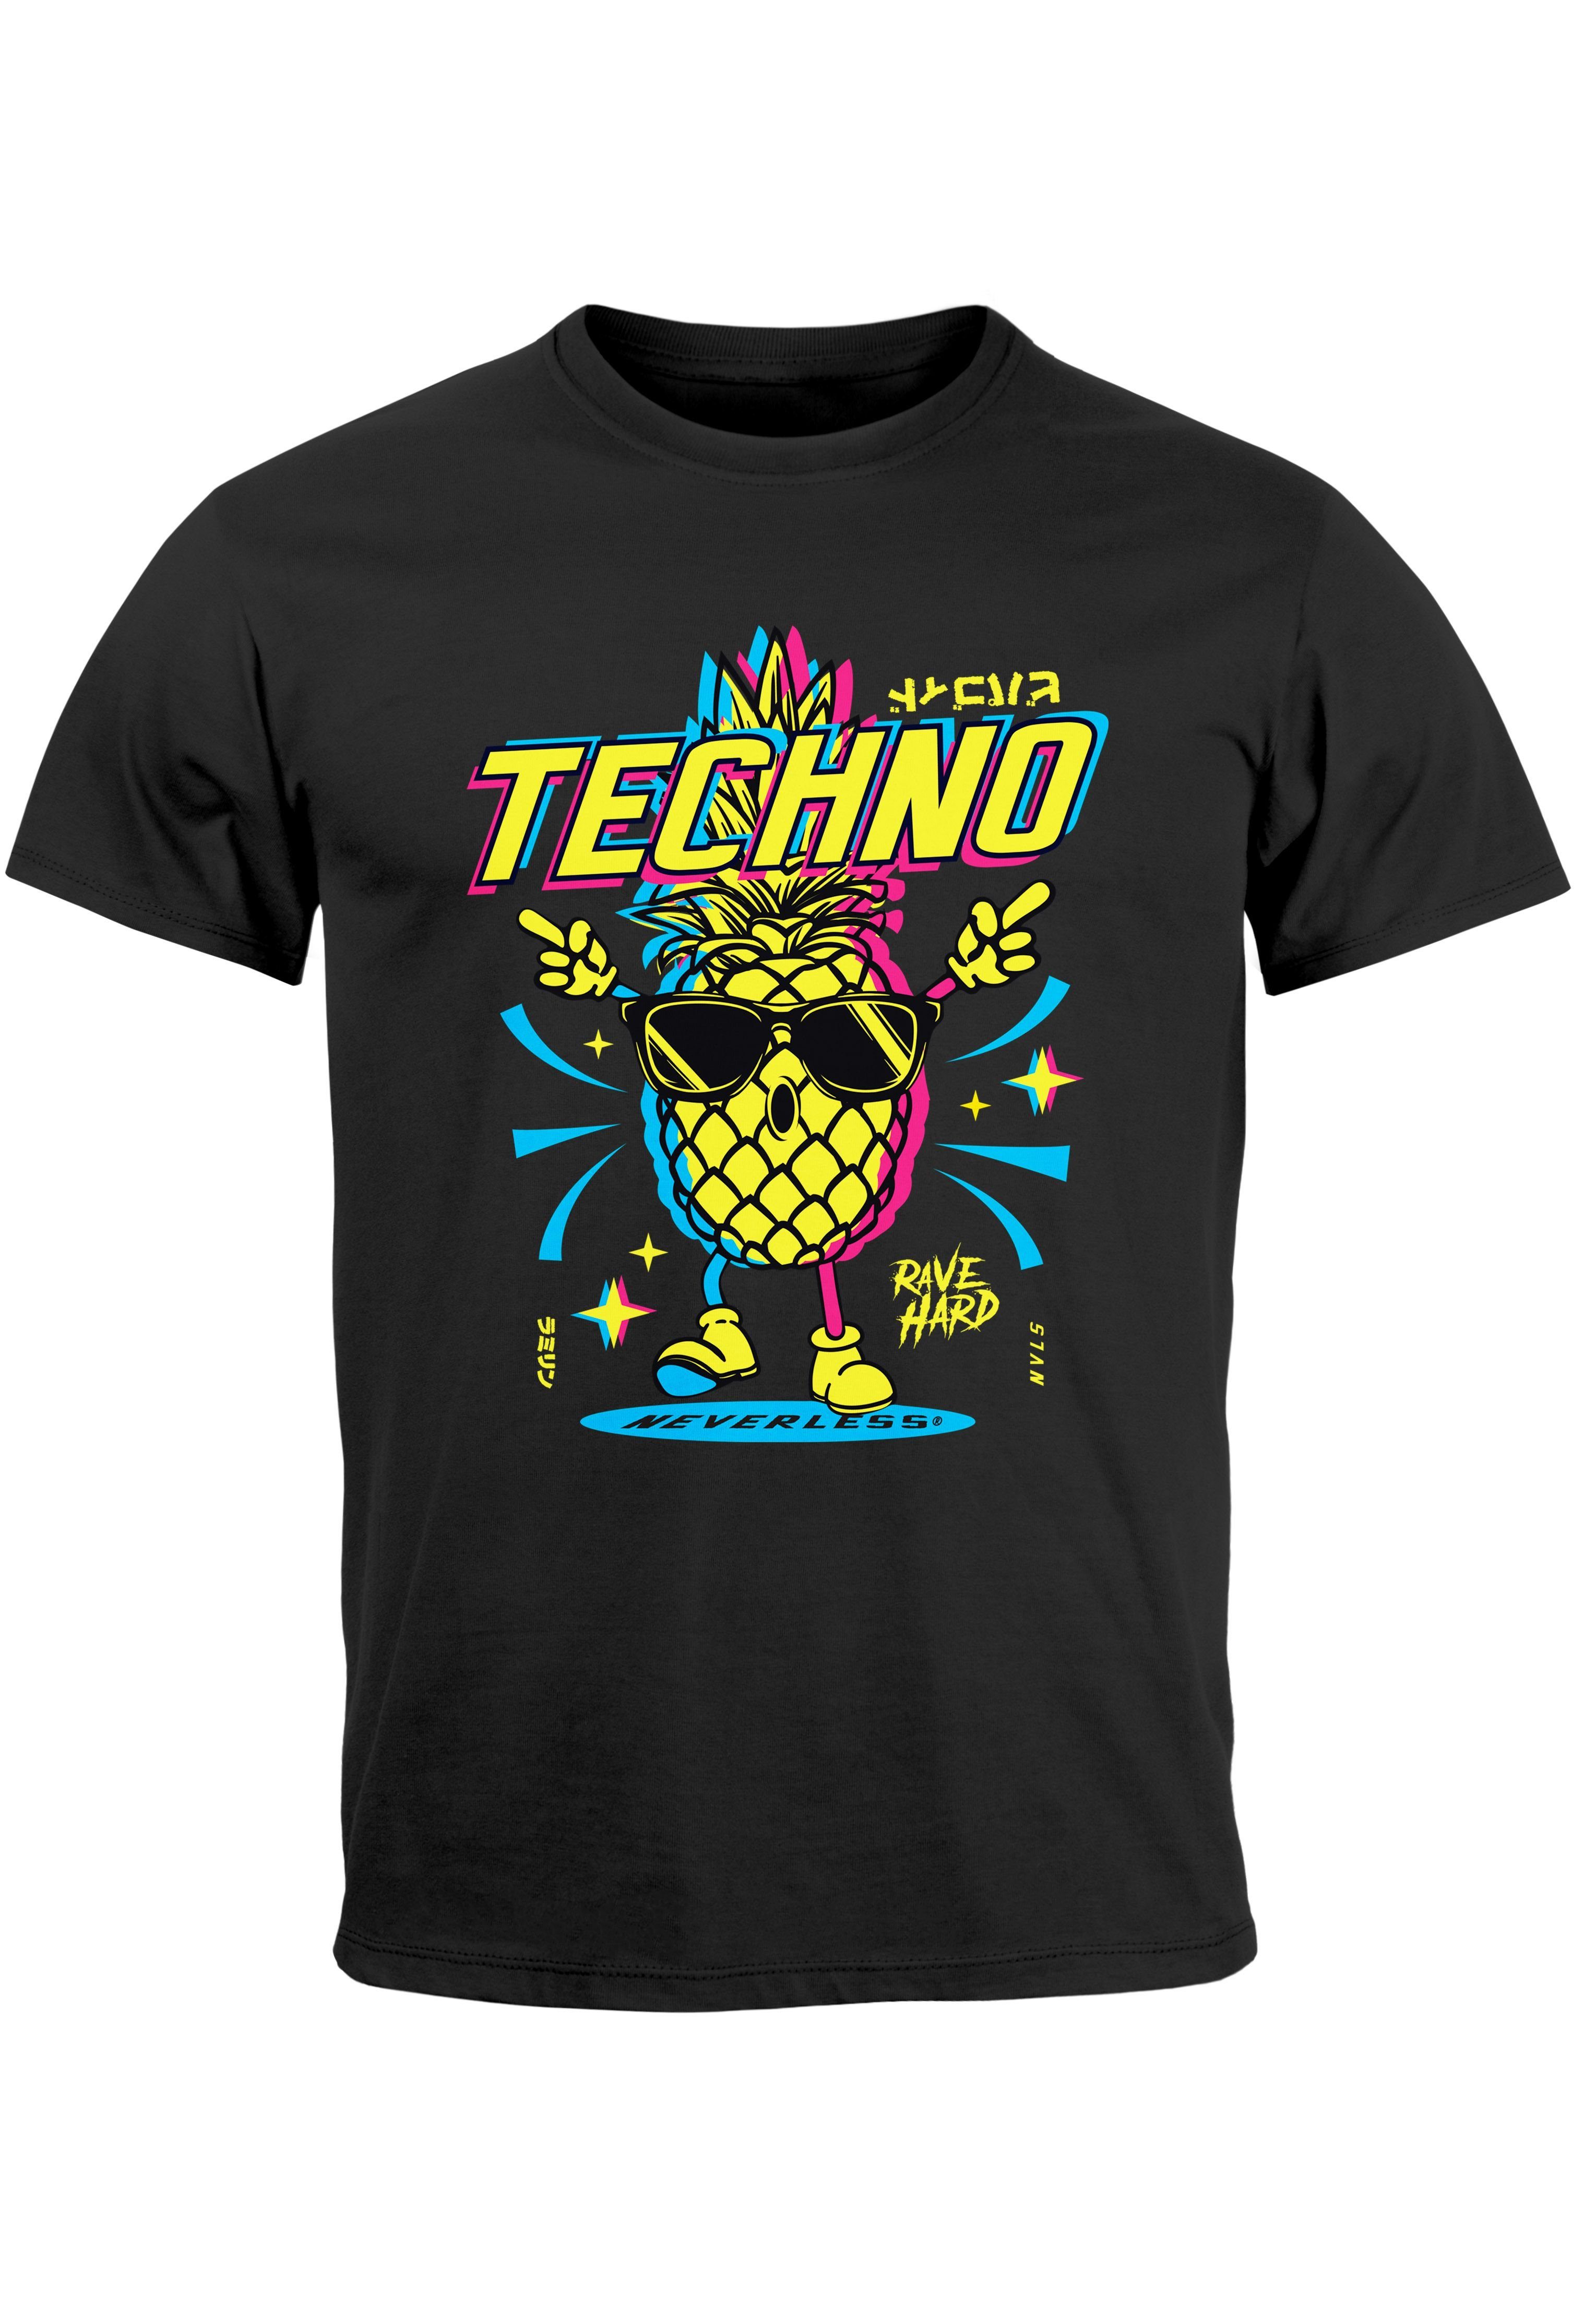 mit T-Shirt Printshirt Tanzen Herren Neverless Party Print schwarz Rave Techno Ananas Shirt Print-Shirt Lustig